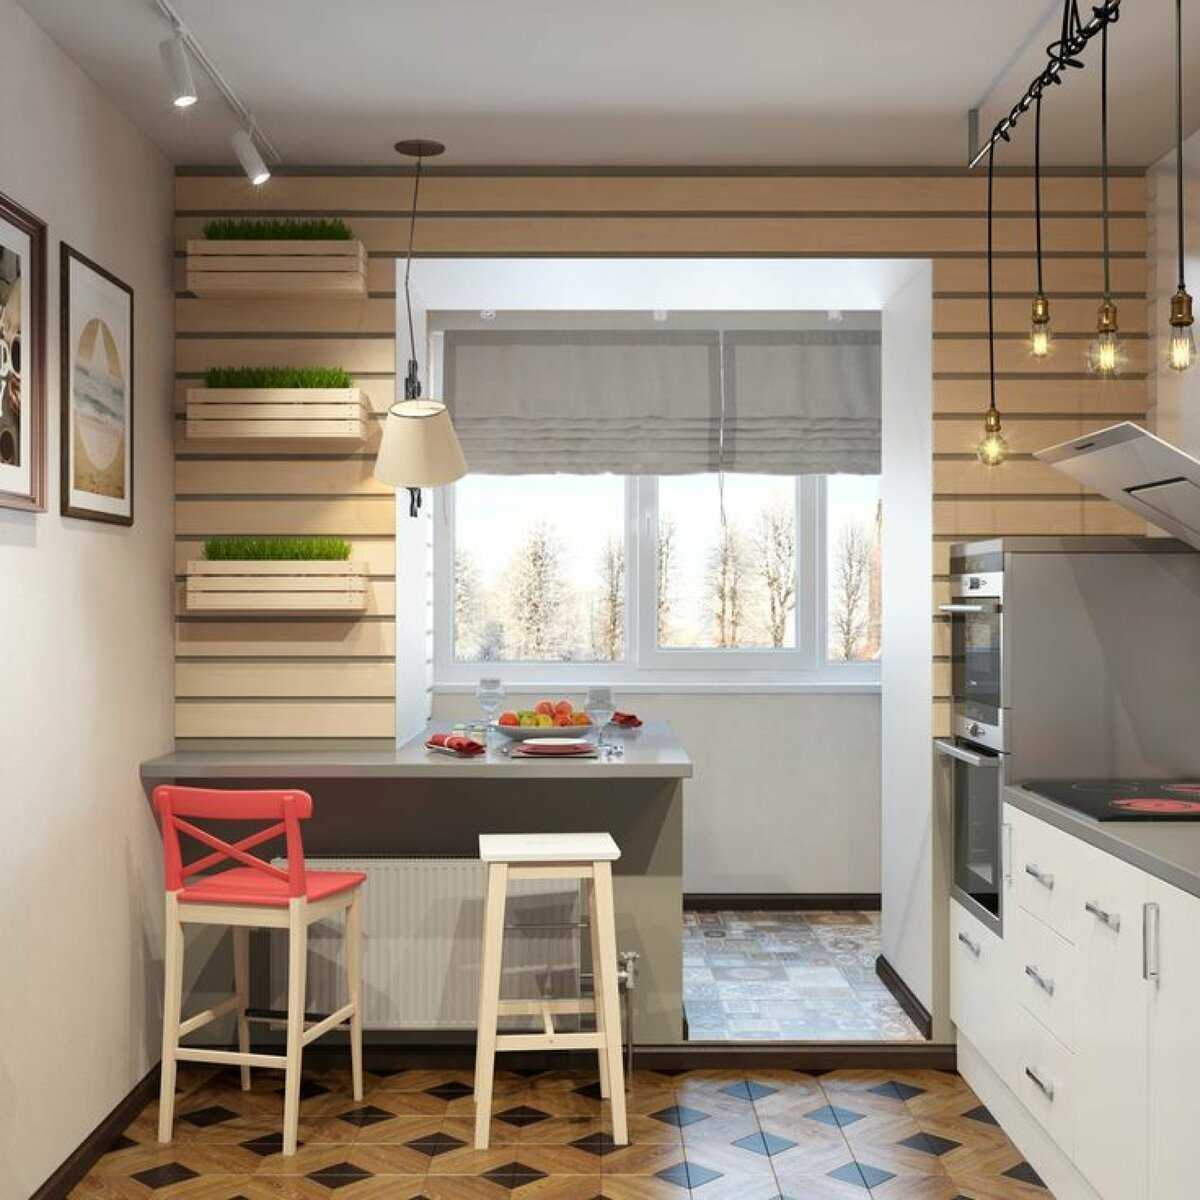 Дизайн кухни 9 кв. м.: уникальные интерьеры и организация пространства (110 фото)